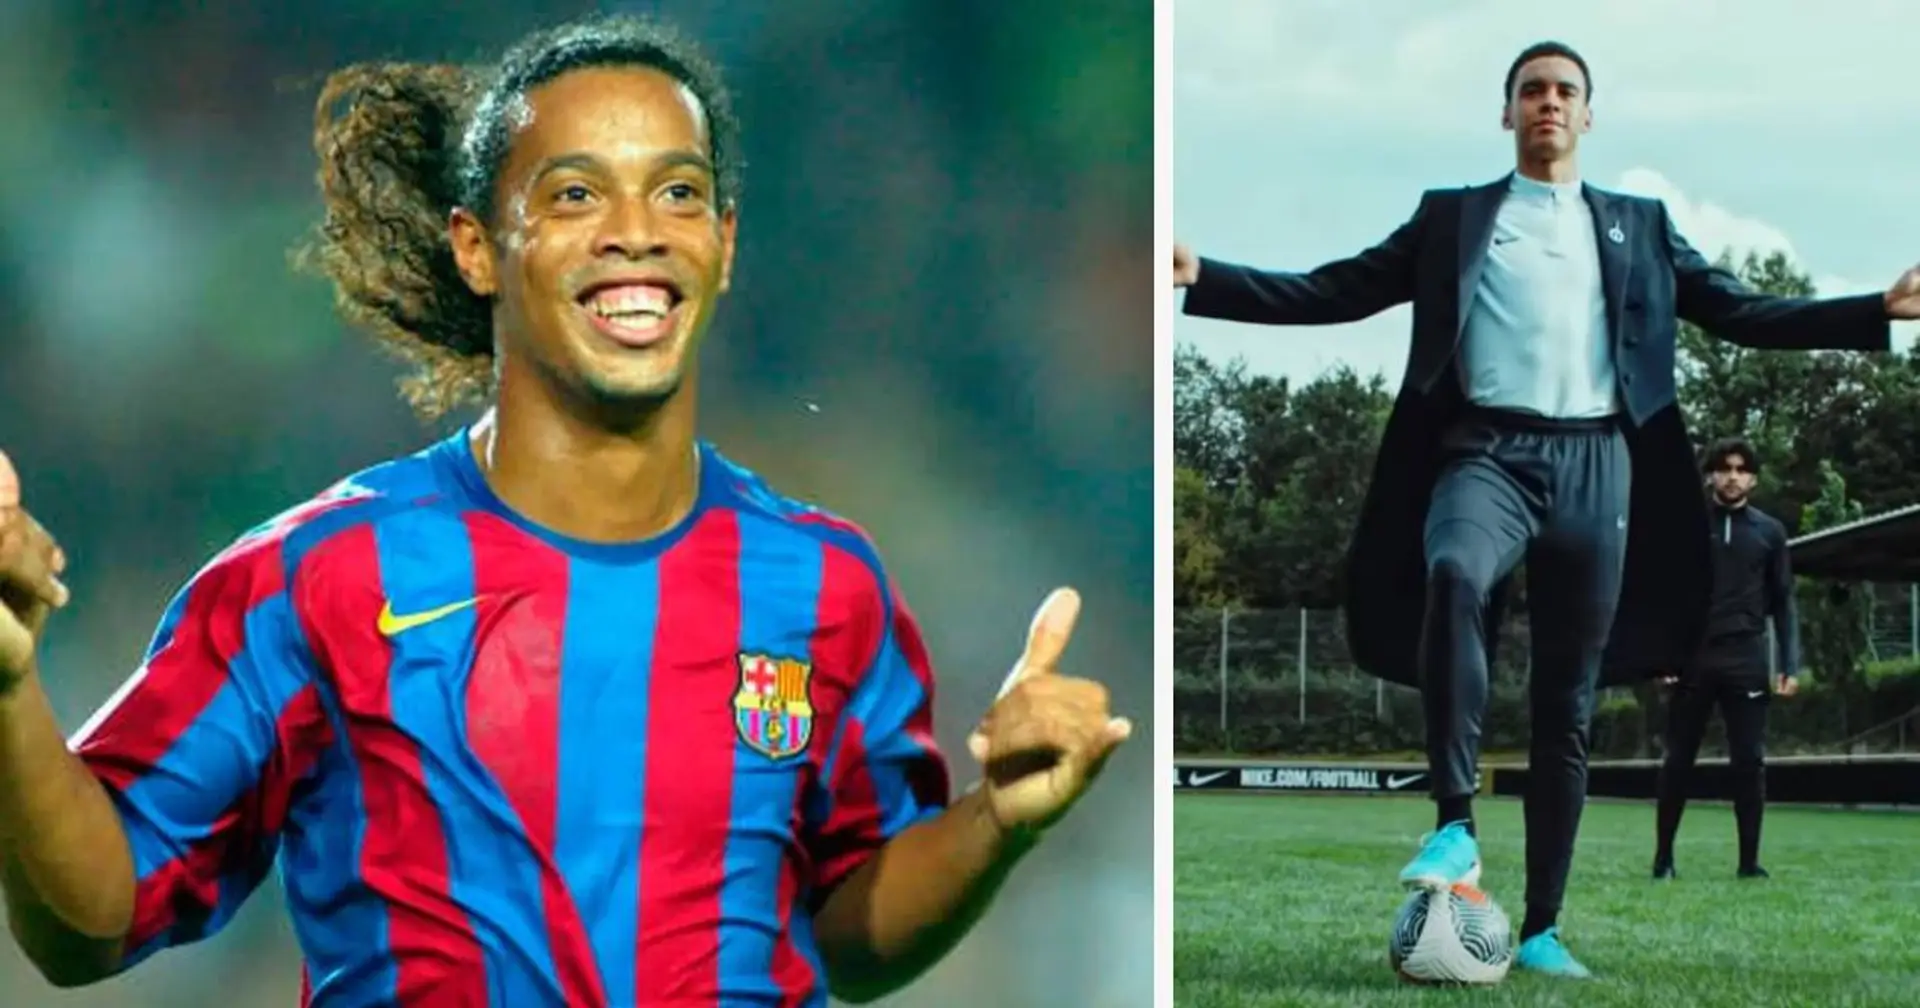 Musiala wird zum Nike-Werbegesicht und trägt selbige Schuhe wie sein Idol Ronaldinho